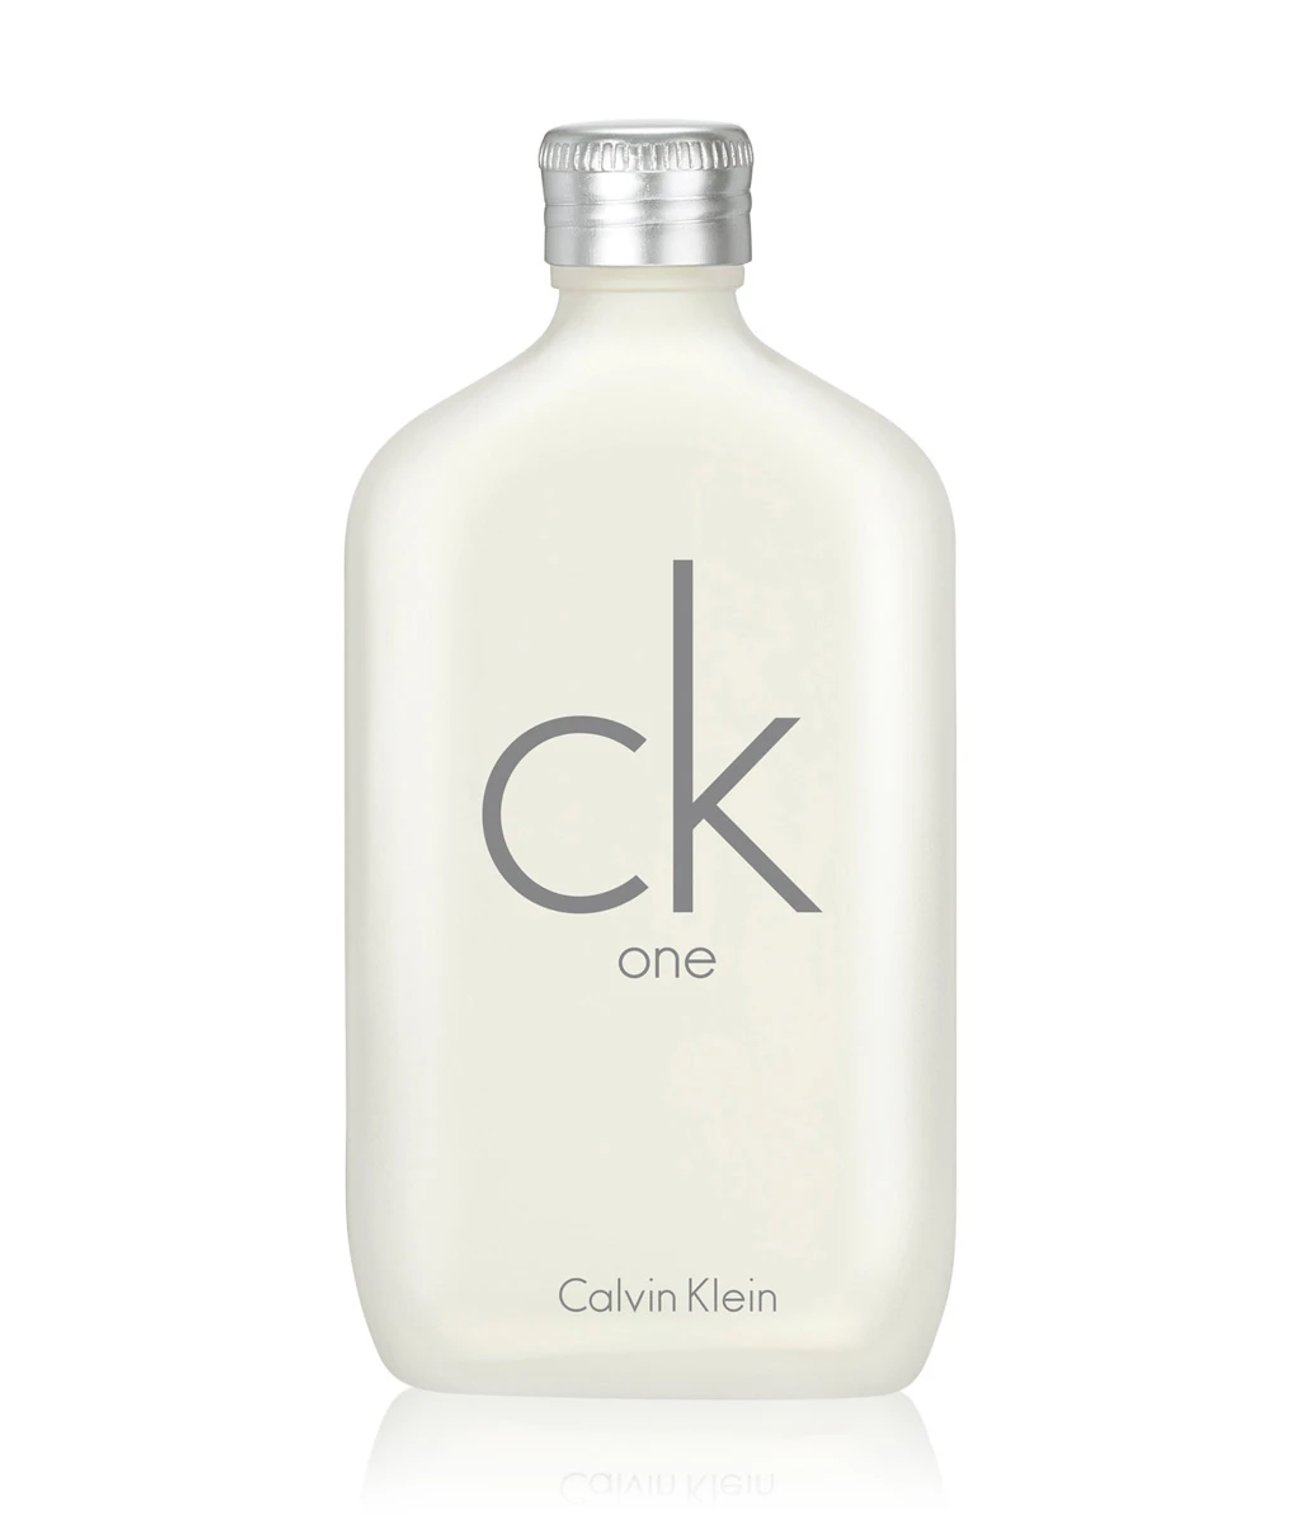 CALVIN KLEIN - ck one